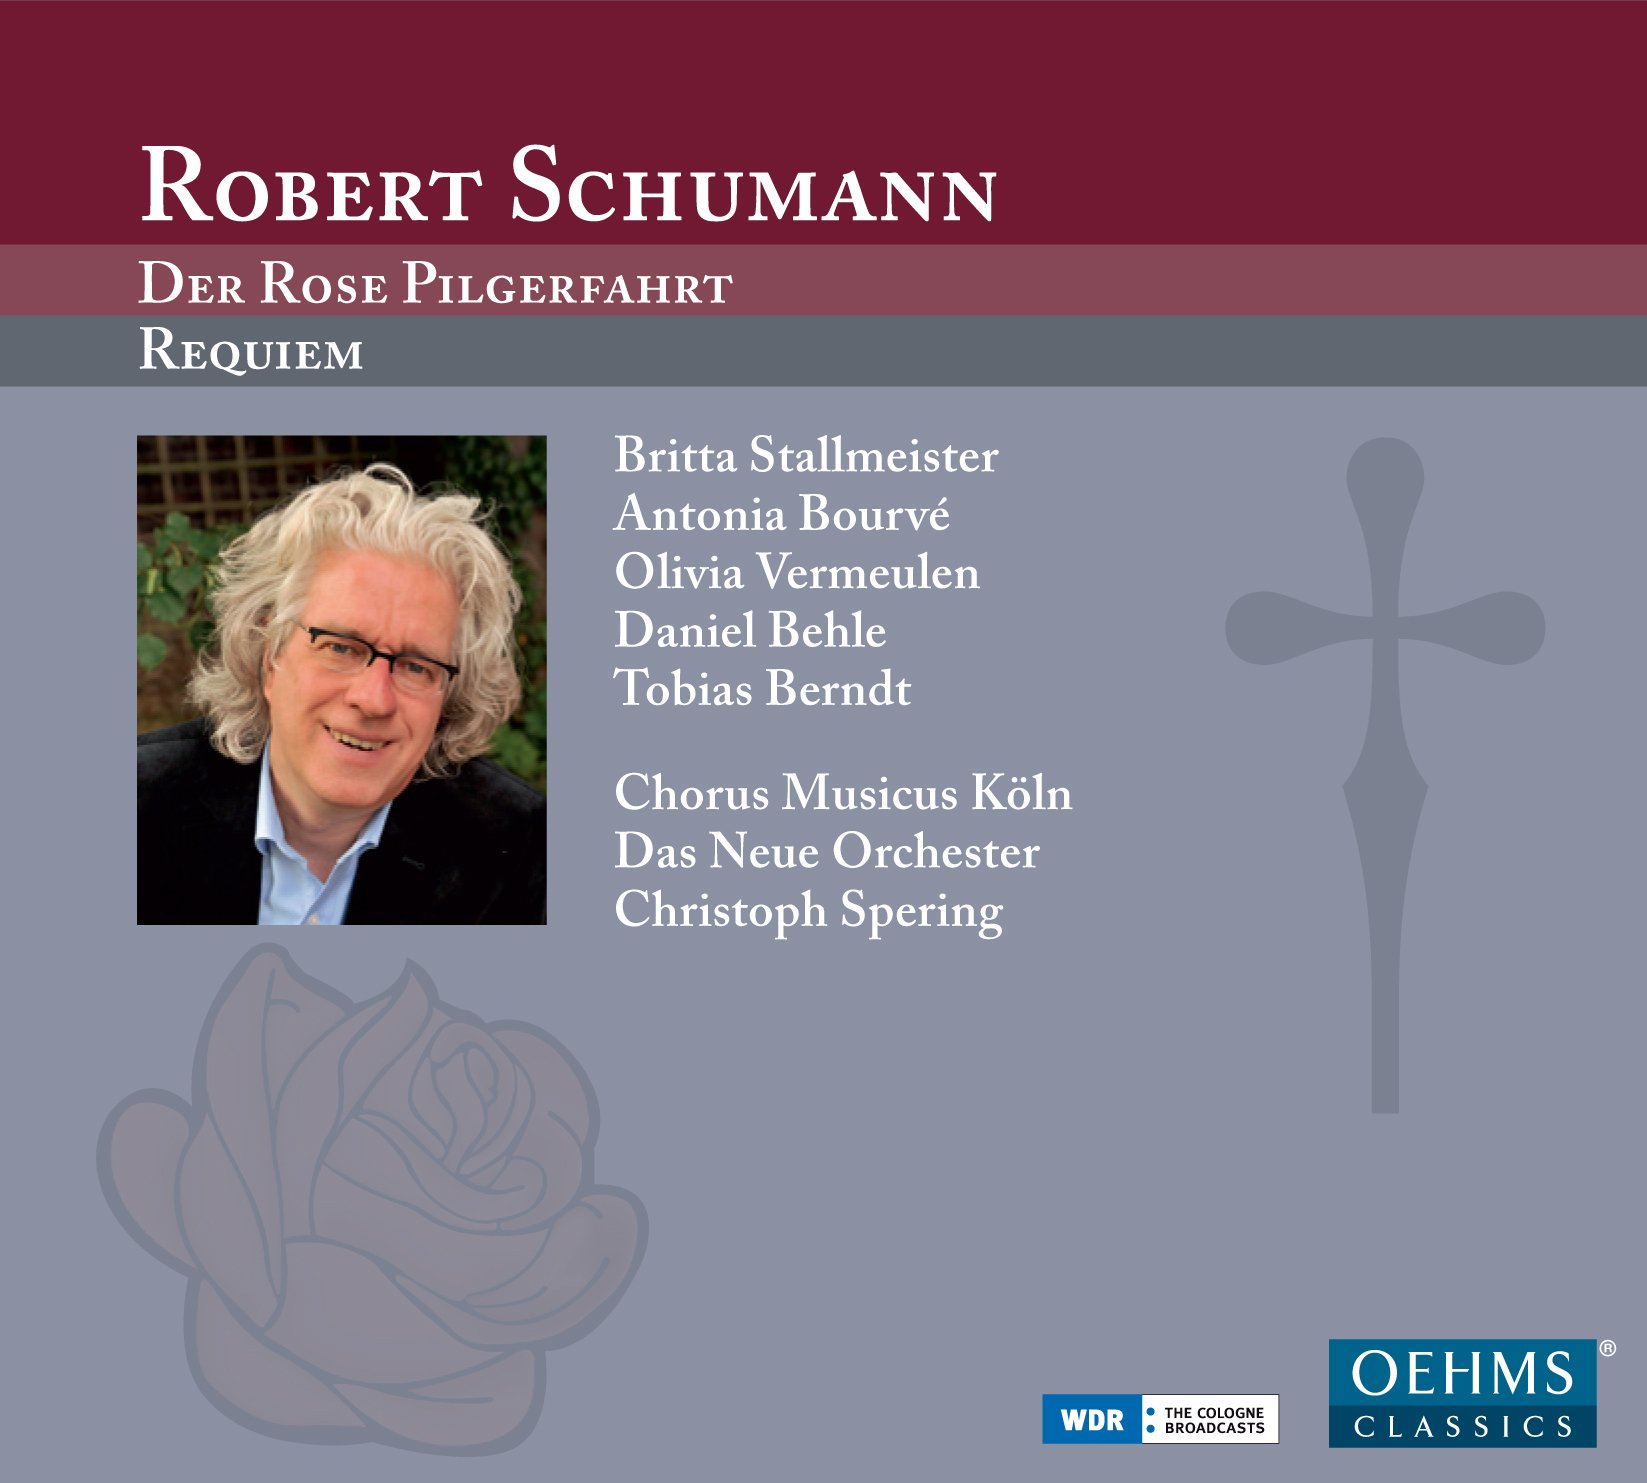 Audio Cd Robert Schumann - Der Rose Pilgerfahrt (2 Cd) NUOVO SIGILLATO, EDIZIONE DEL 02/09/2013 SUBITO DISPONIBILE